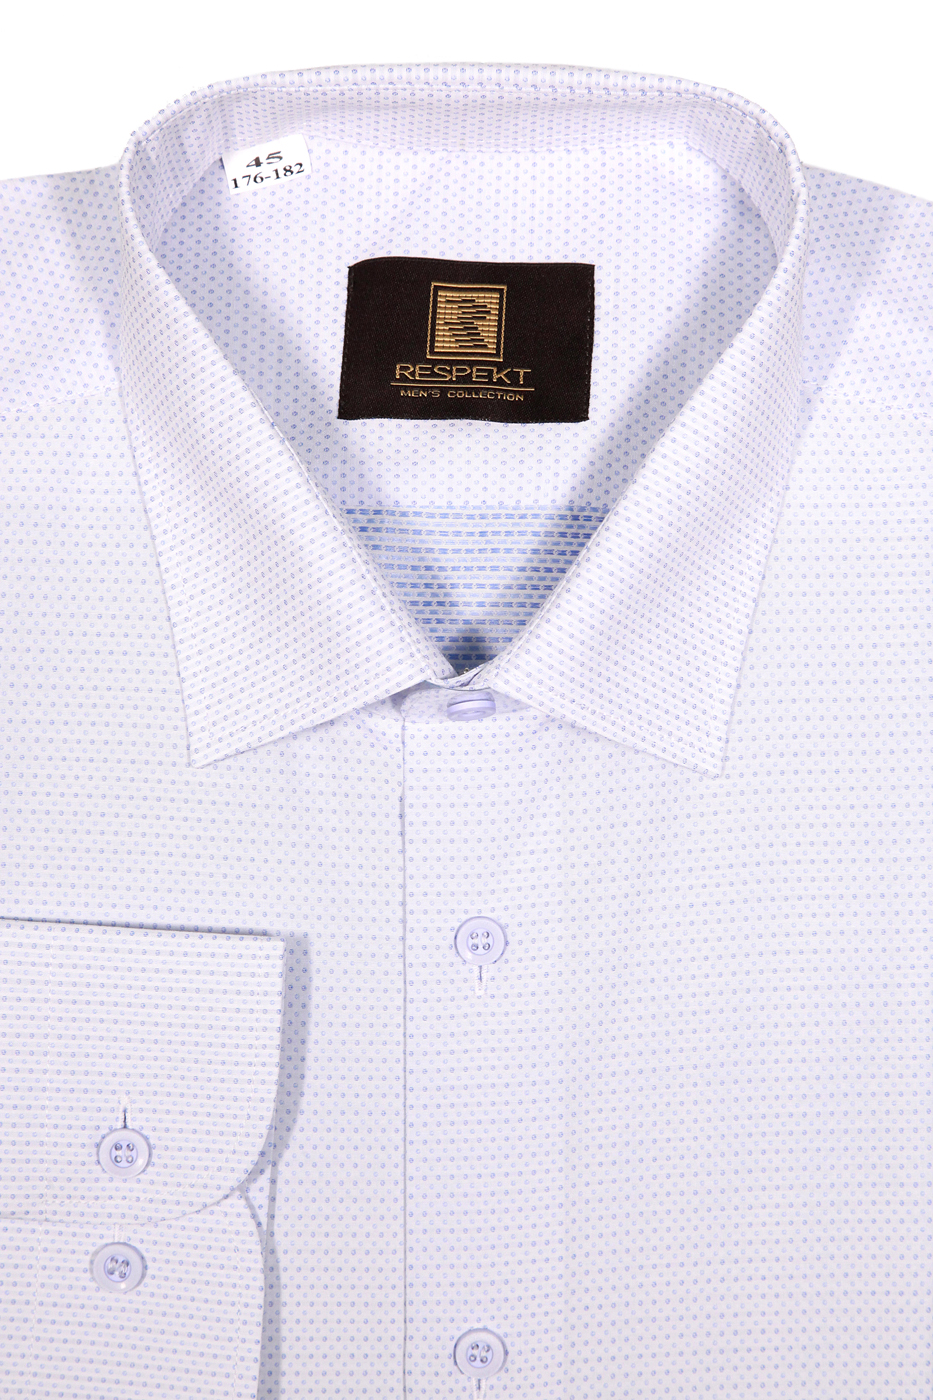 Белая мужская рубашка в мелкую голубую крапинку 238 (53-08)